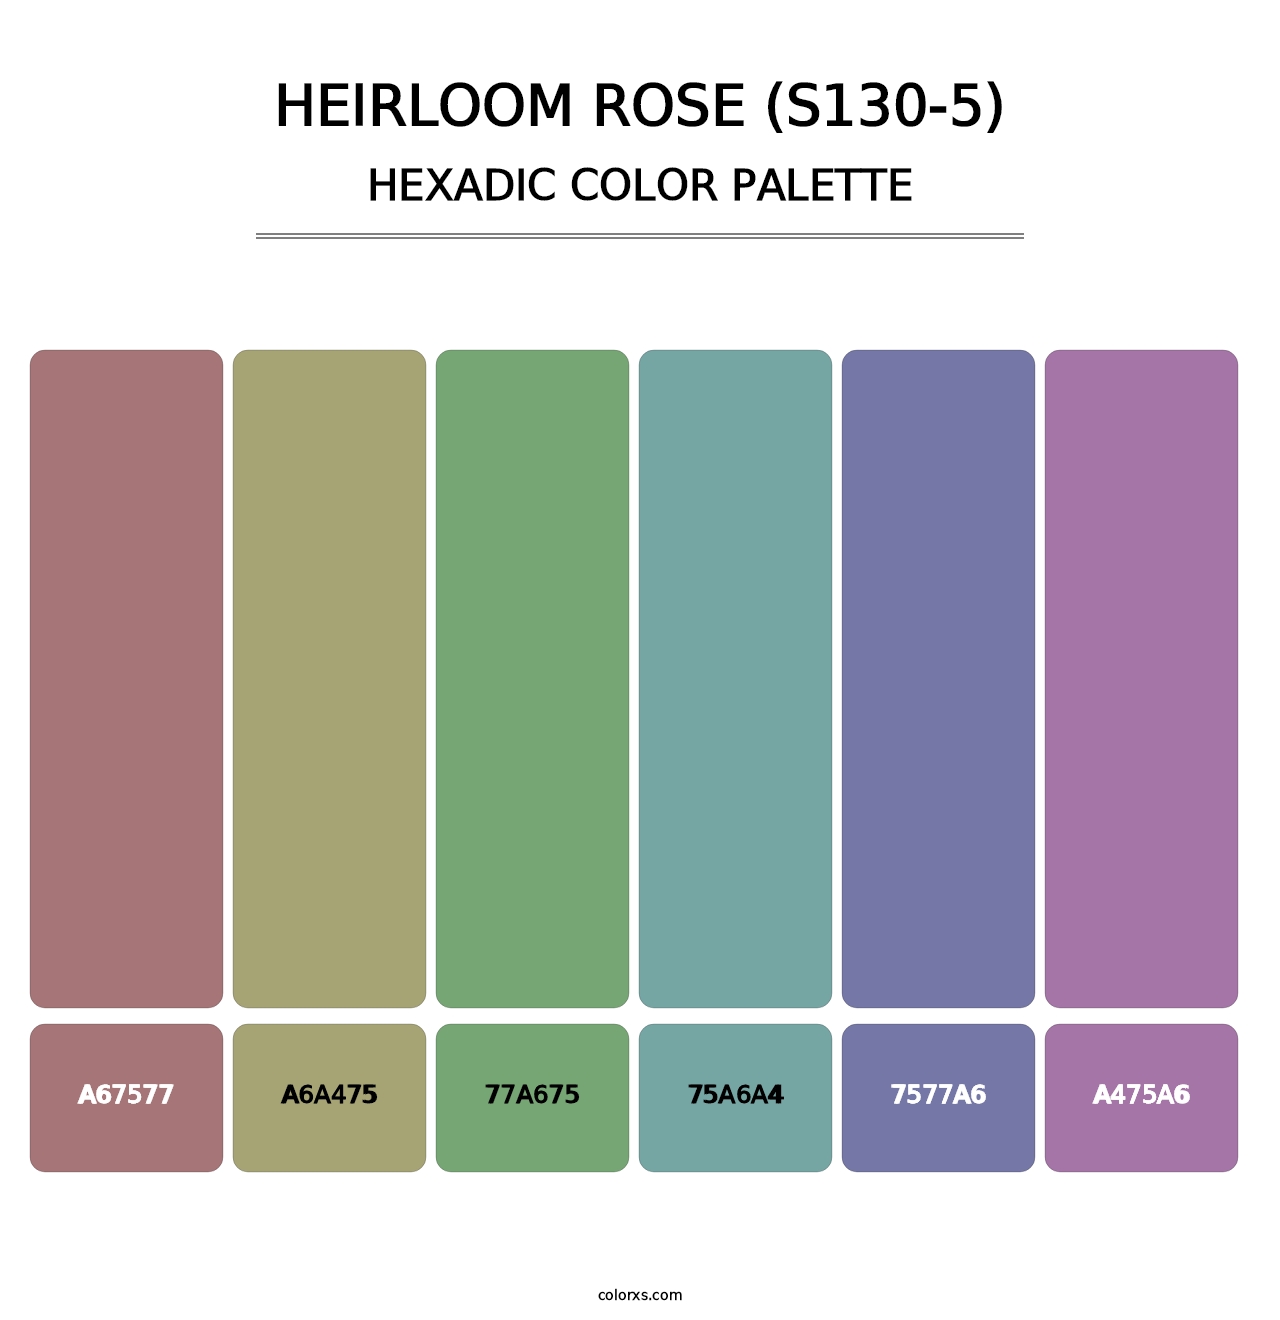 Heirloom Rose (S130-5) - Hexadic Color Palette